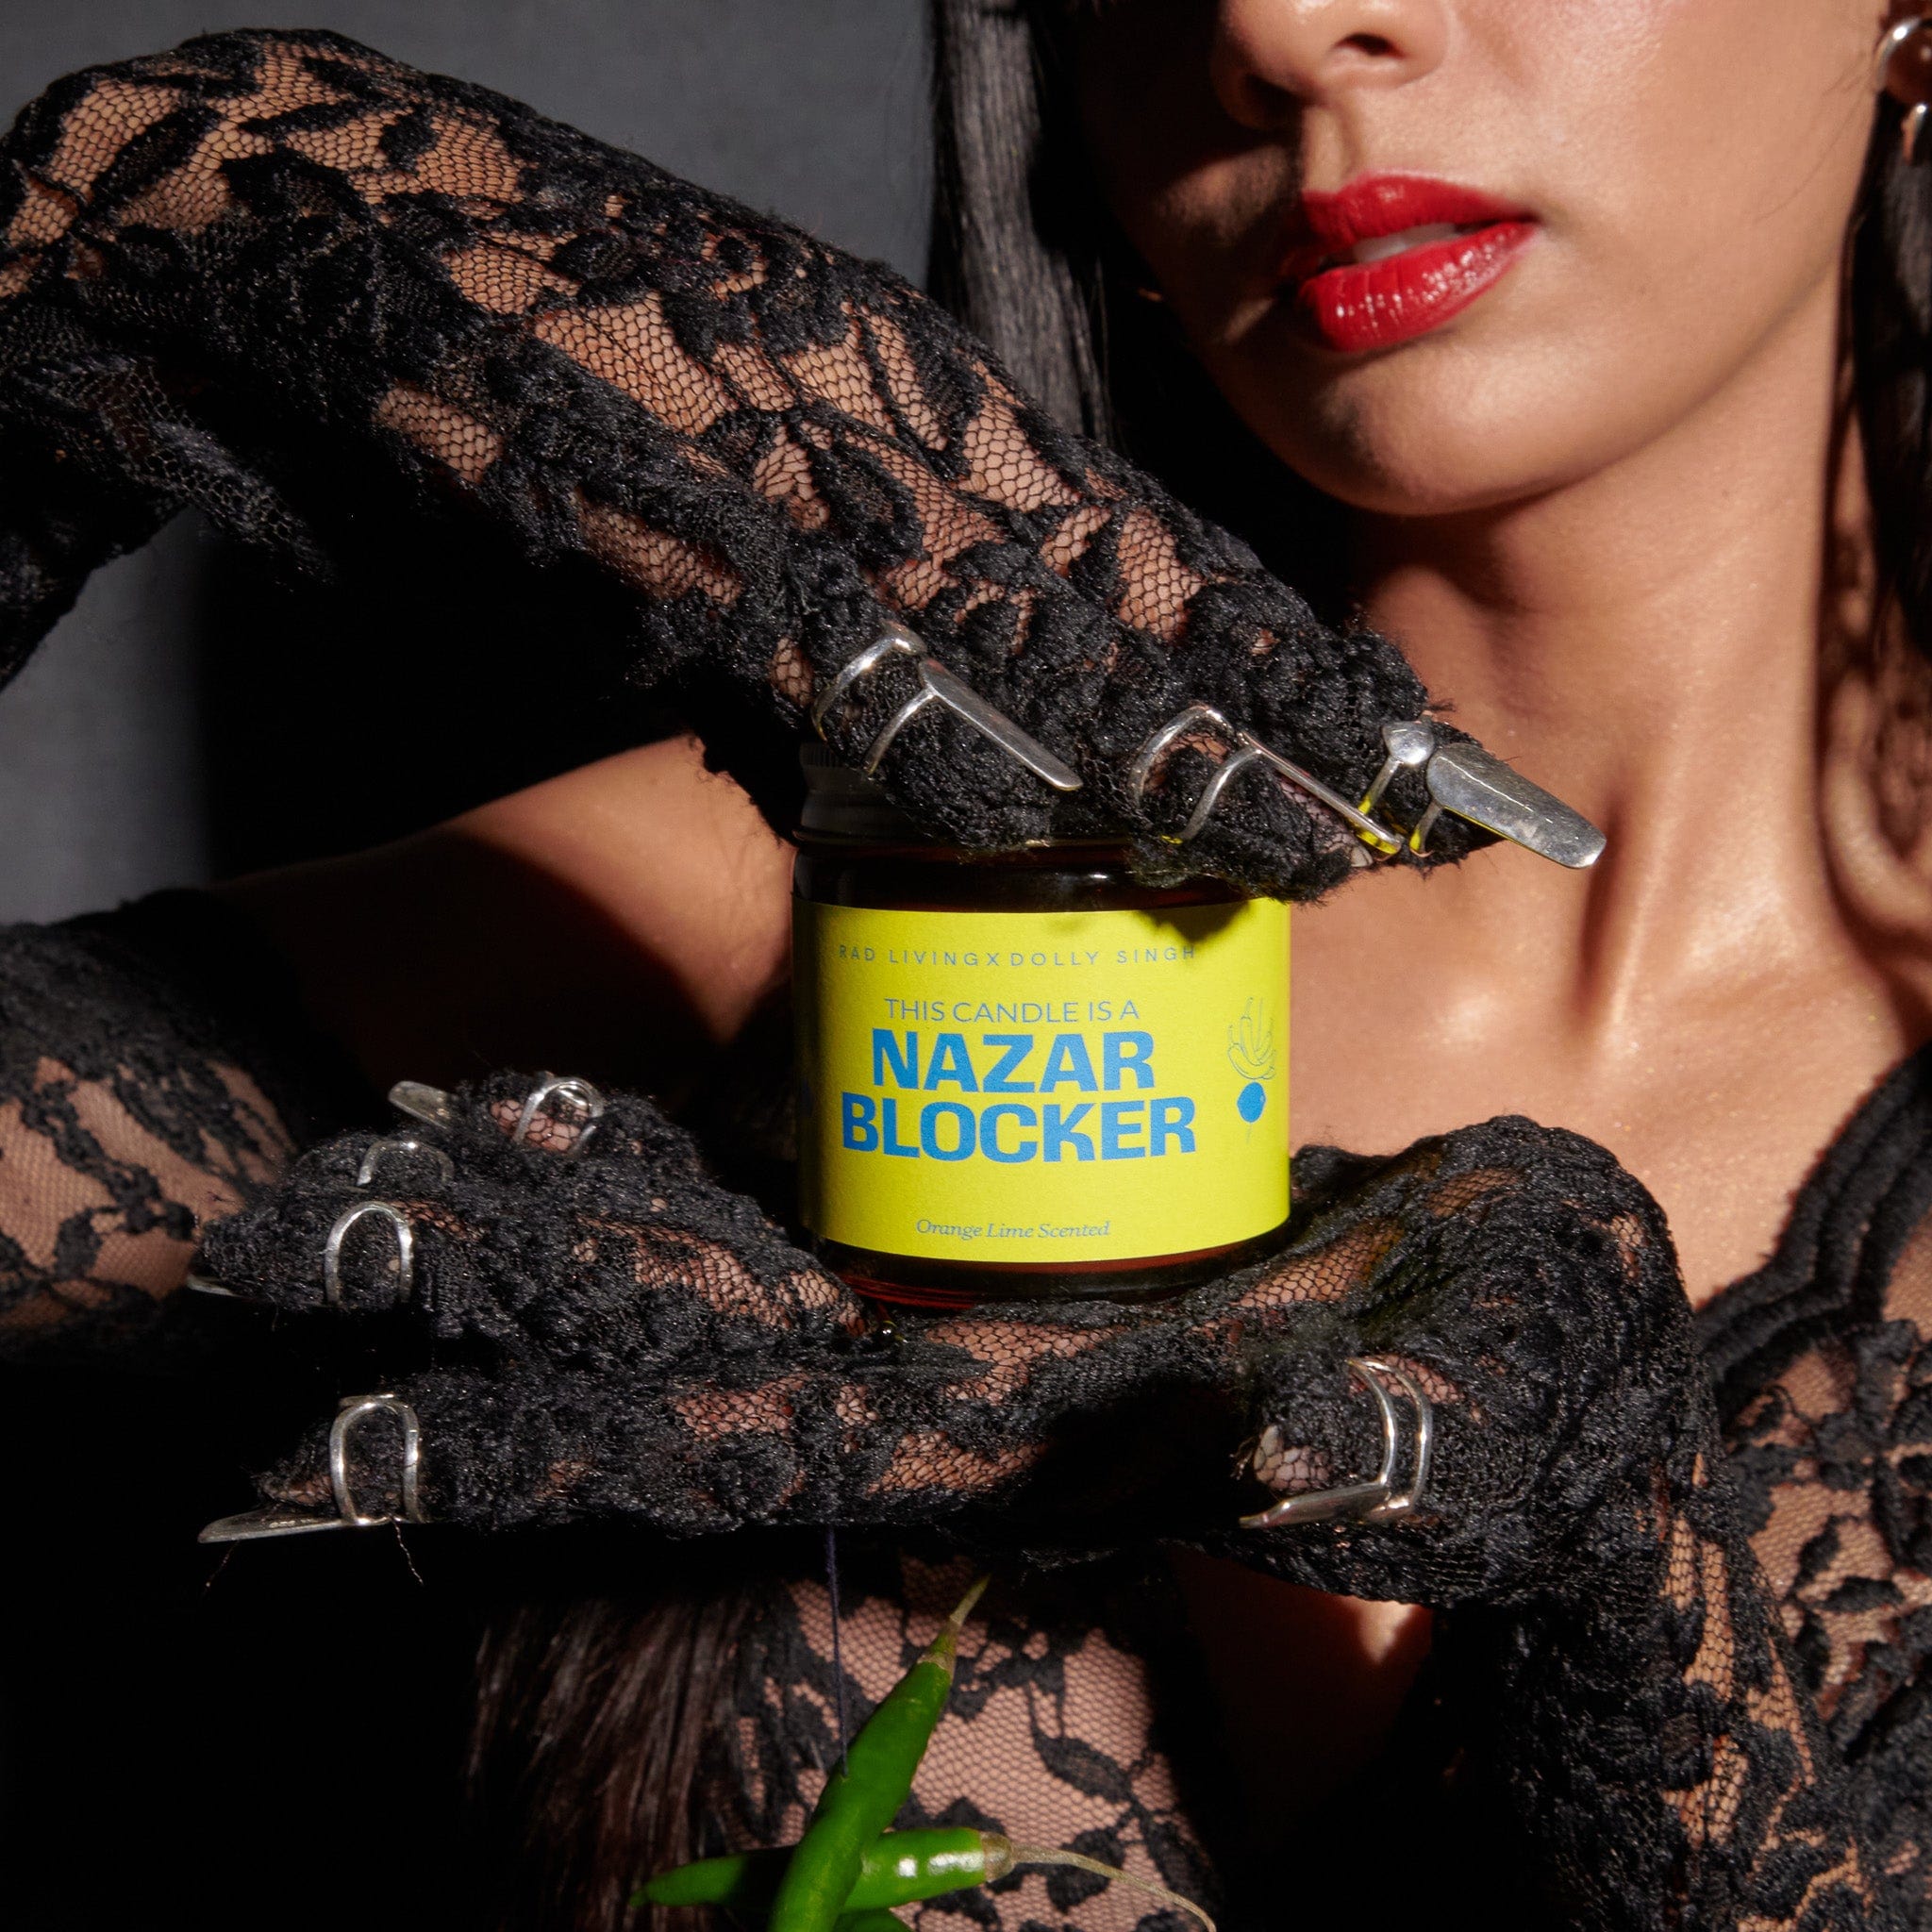 Nazar Blocker - Orange Lime Scented Candle